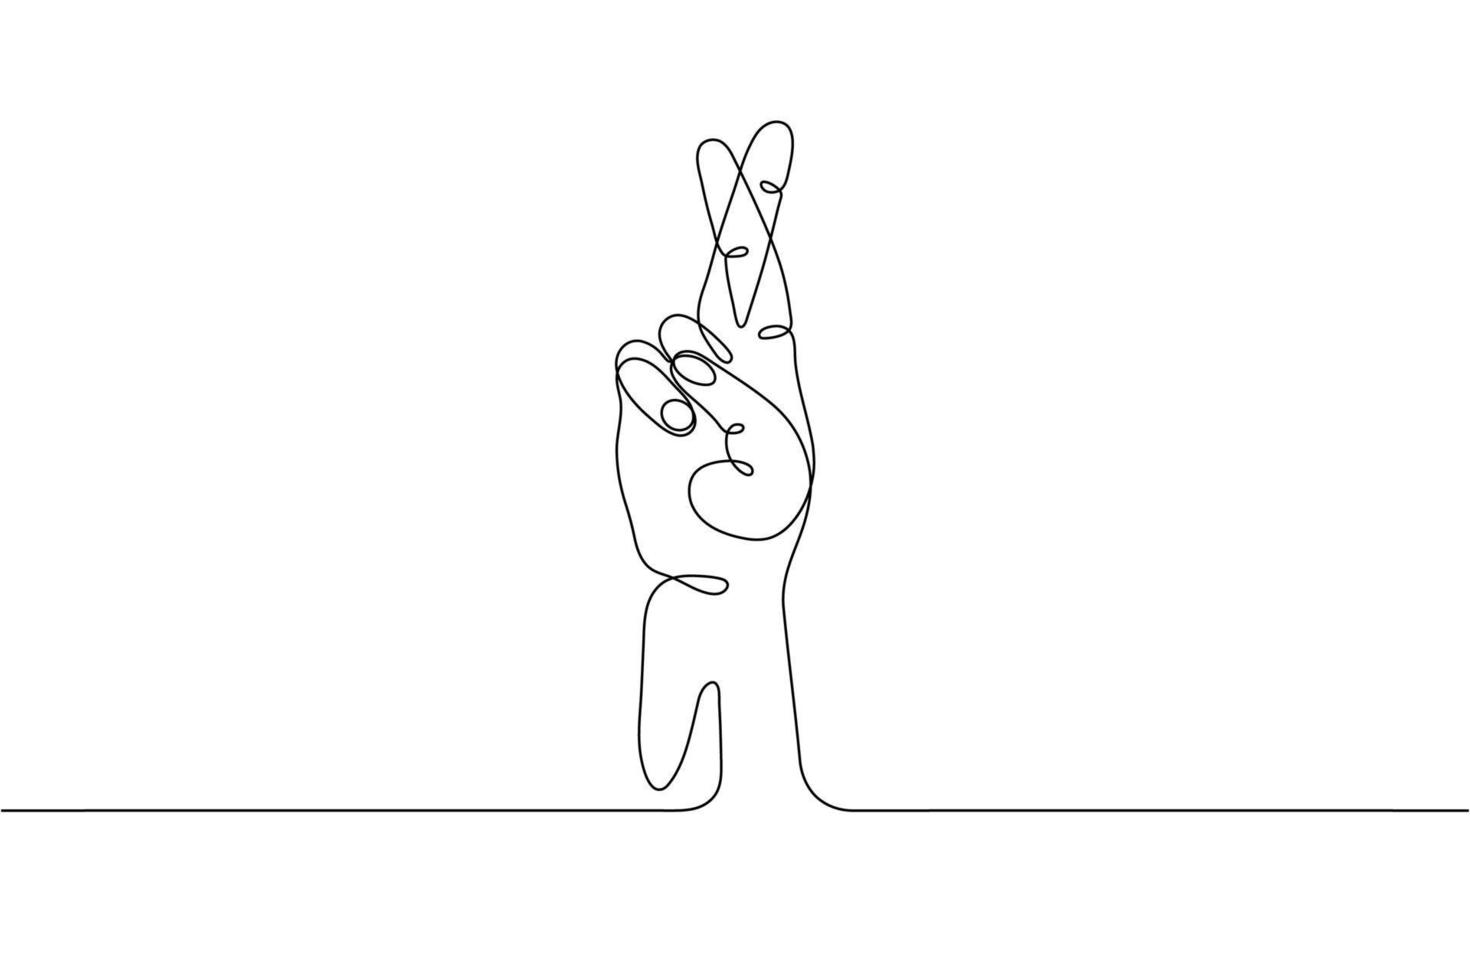 geste de la main dessiné sur une seule ligne, main humaine minimaliste avec les doigts croisés, symbole du mensonge, sur la chance, la superstition, le souhait, la tricherie. conception de vecteur graphique continu dynamique à une ligne